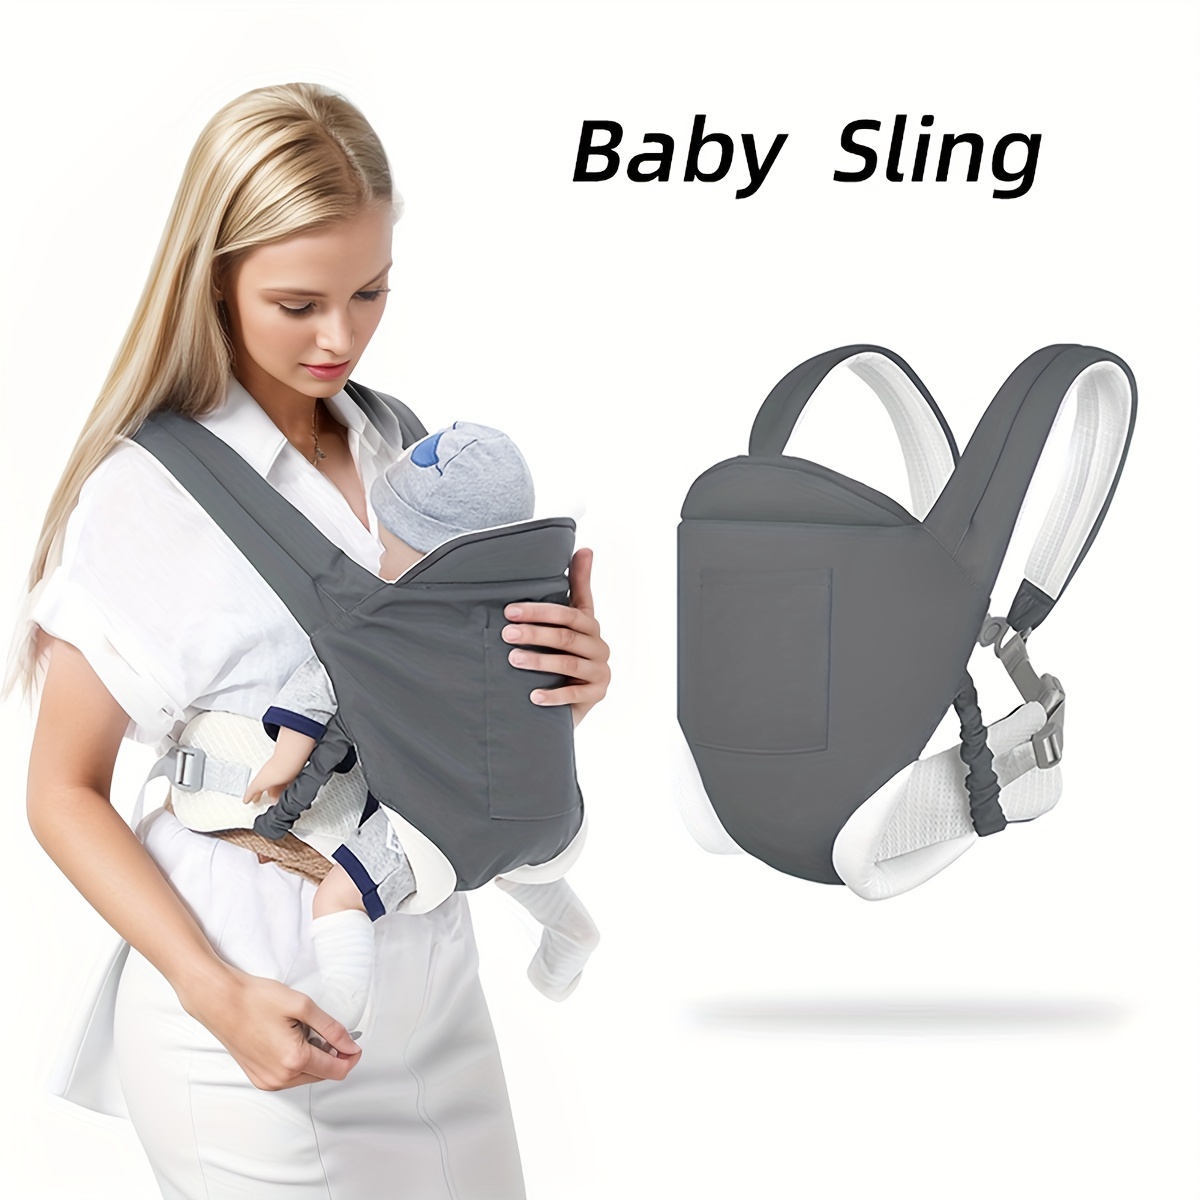 Portabebés, recién nacido a niño, ajustable, transpirable y manos libres  portabebés Sling (gris)